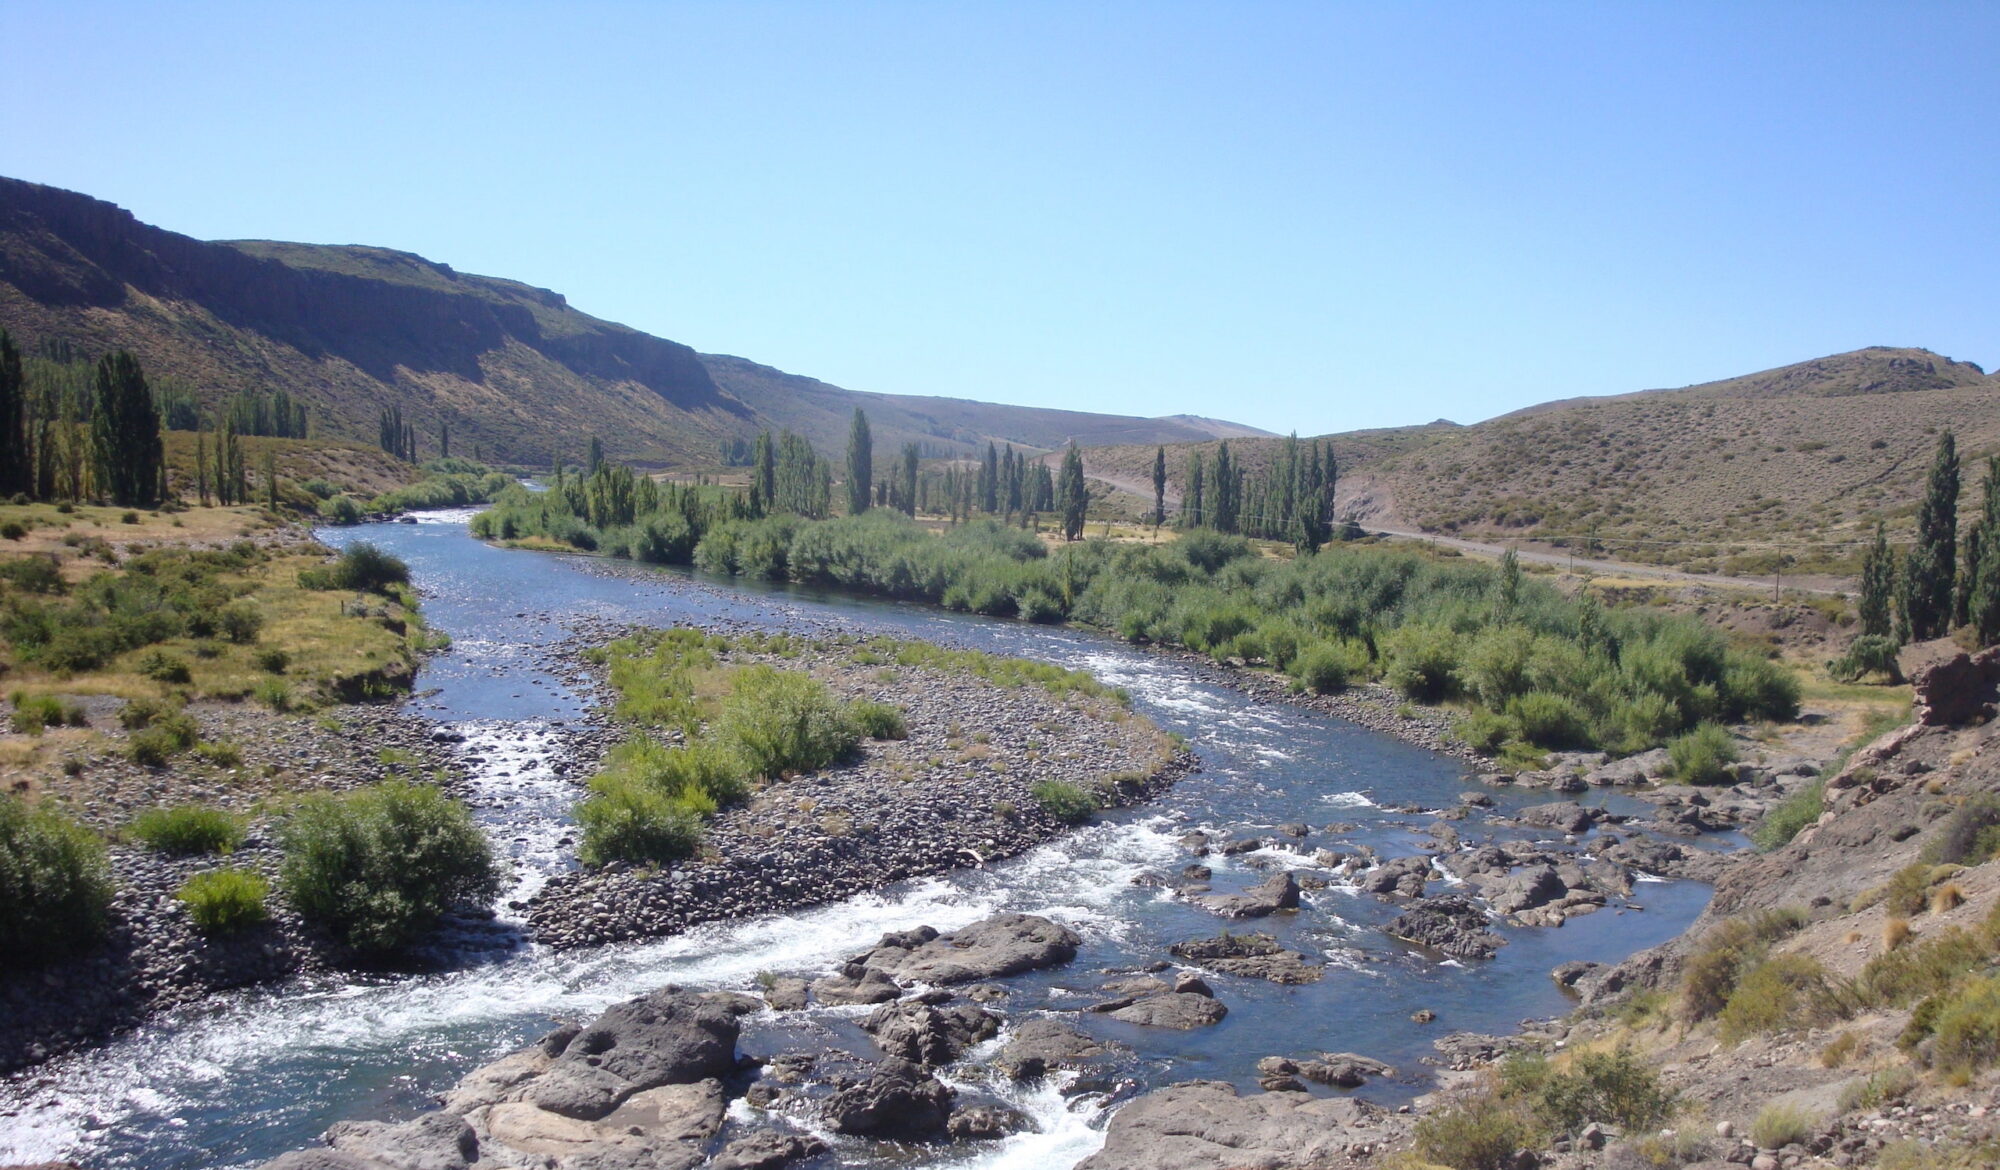 <p>O rio Nahueve, na província de Neuquén, Argentina. Grupos locais levantam preocupações sobre os possíveis impactos ambientais de uma nova barragem (Imagem: <a href="https://www.flickr.com/photos/irenaimages/23517397858/in/photolist-Cai5T6-BQ9P3S-ry5cC2-suTh3i-sxi2AC-sPSvVn-sdhGLW-sPSr42-sxpnpH-BAMkvD">Agência de Desenvolvimento de Investimento de Neuquén</a> / <a href="https://www.flickr.com/people/irenaimages/">IRENA</a>, <a href="https://creativecommons.org/licenses/by-nc-nd/2.0/">CC BY NC ND</a>)</p>